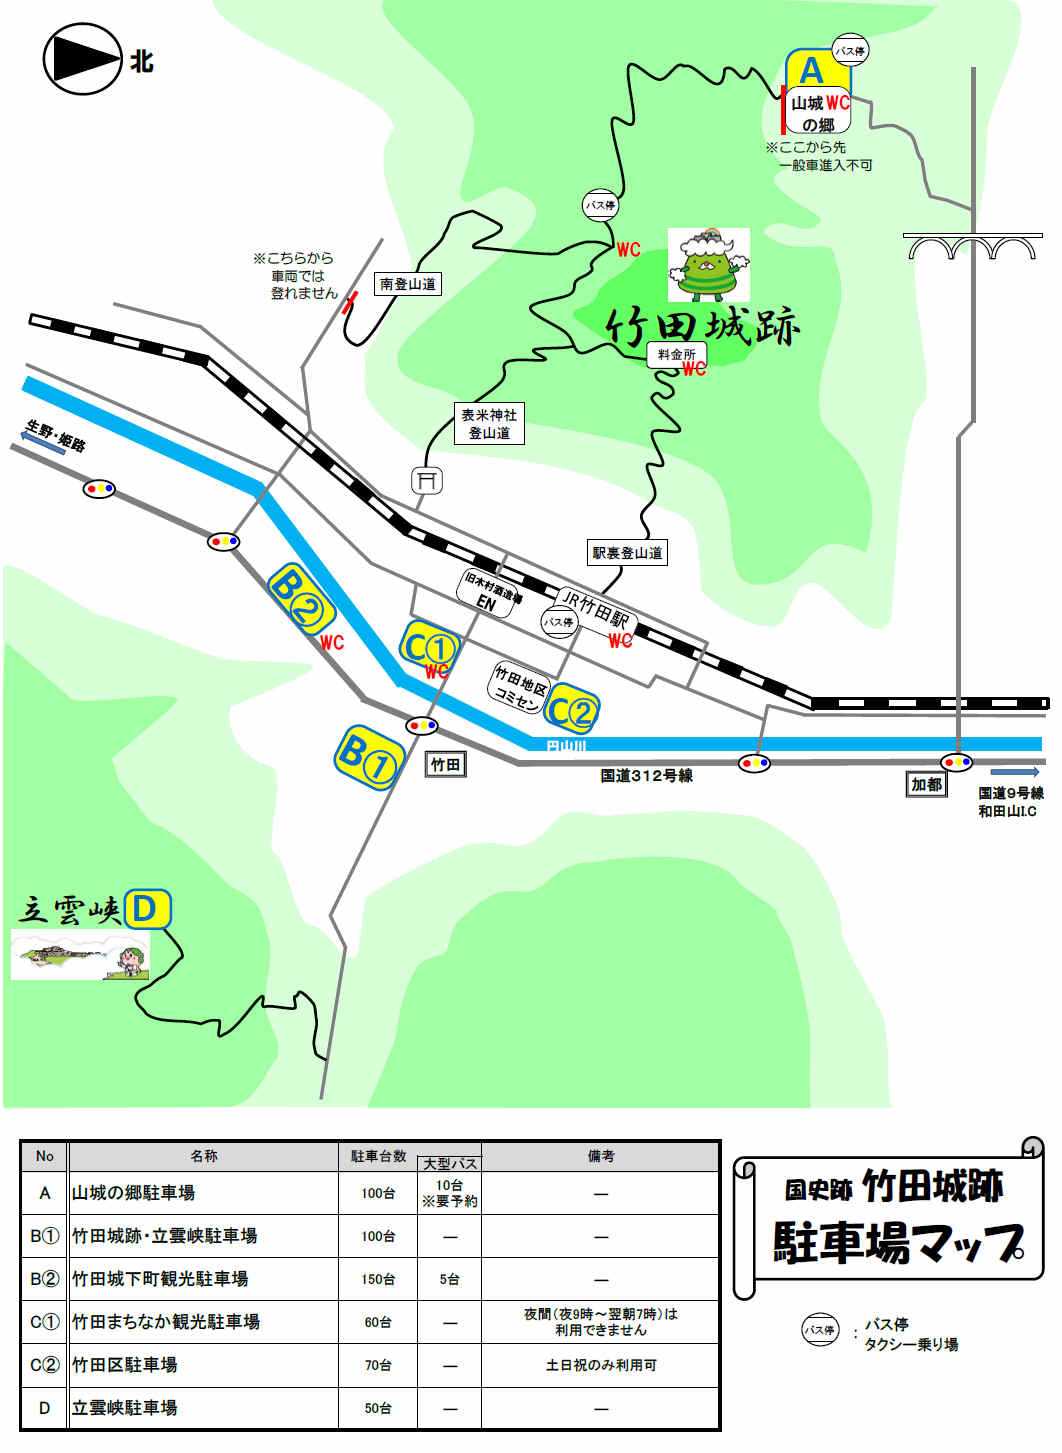 竹田城周辺の駐車場マップ